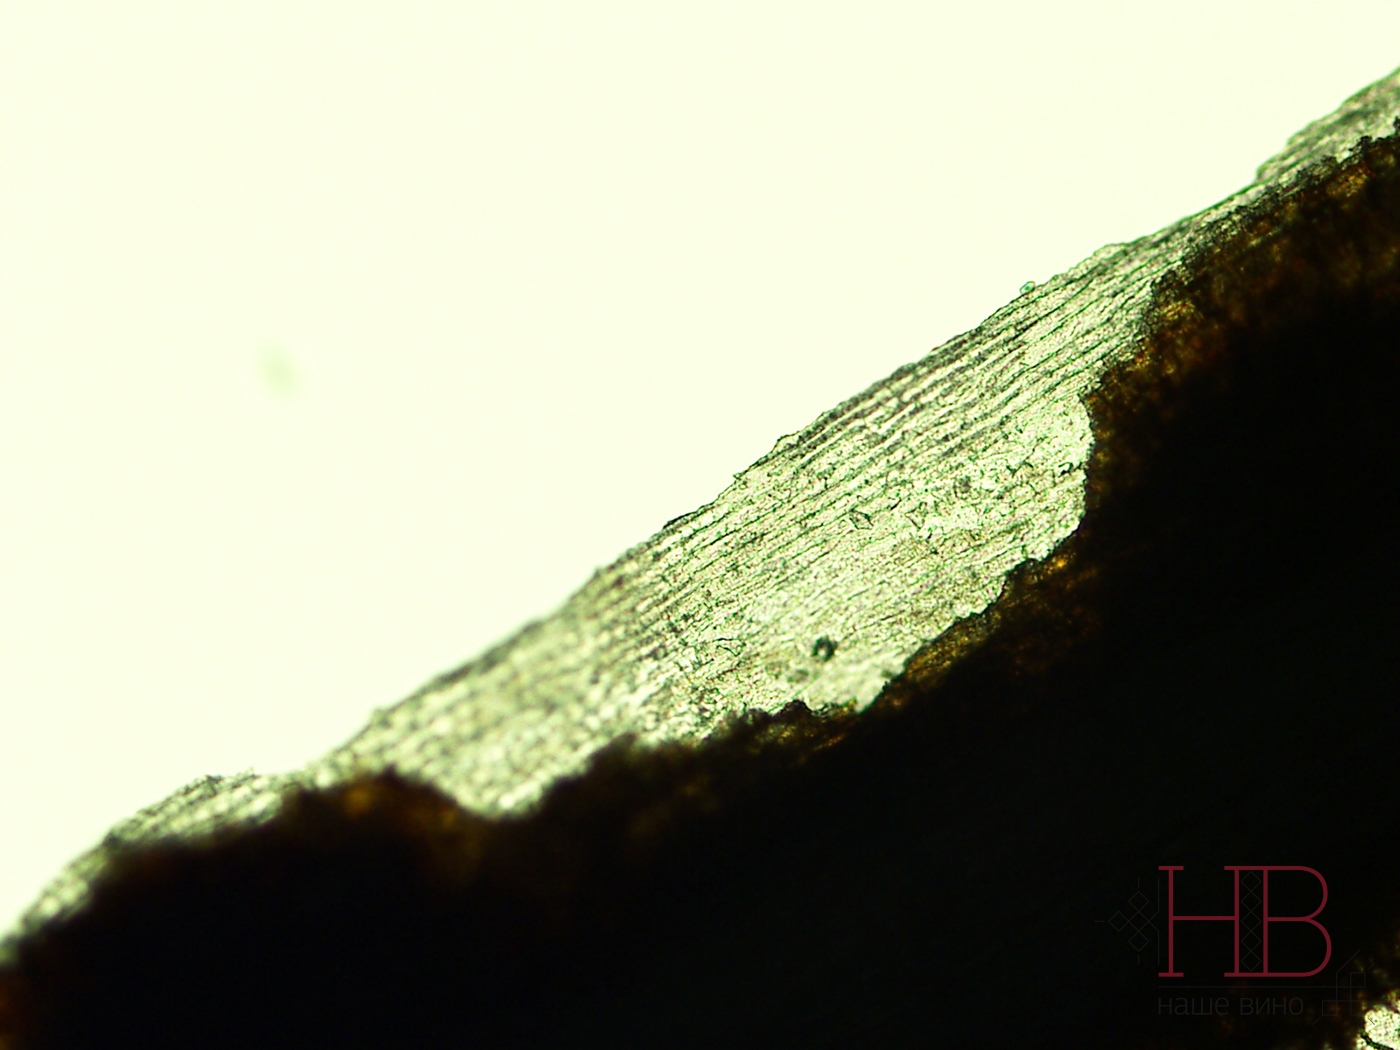 Пленка на коре лозы под микроскопом